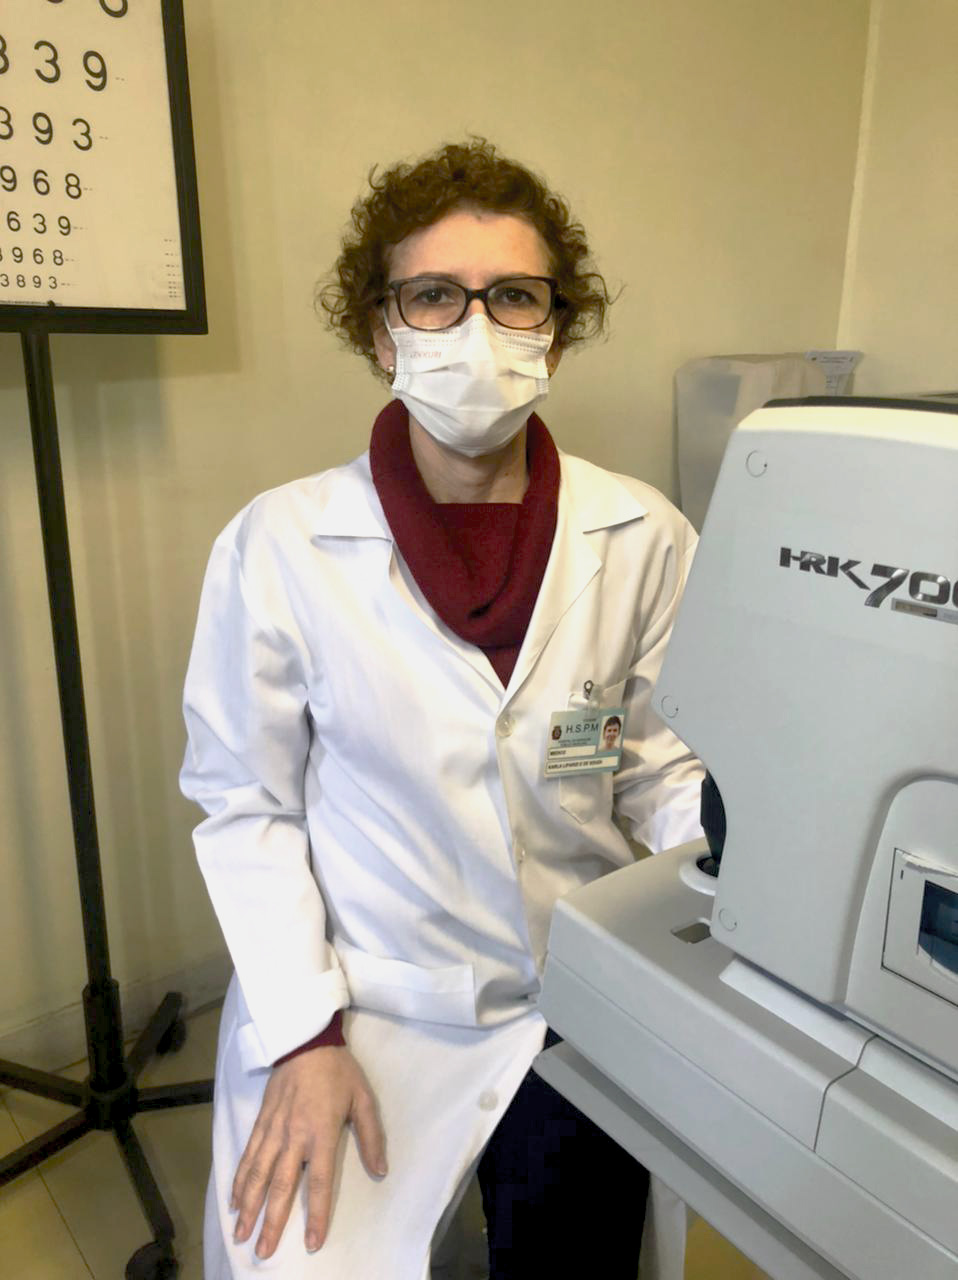 Foto da médica, com avental branca, máscara e óculos, sentada em frente a um aparelho oftalmológico